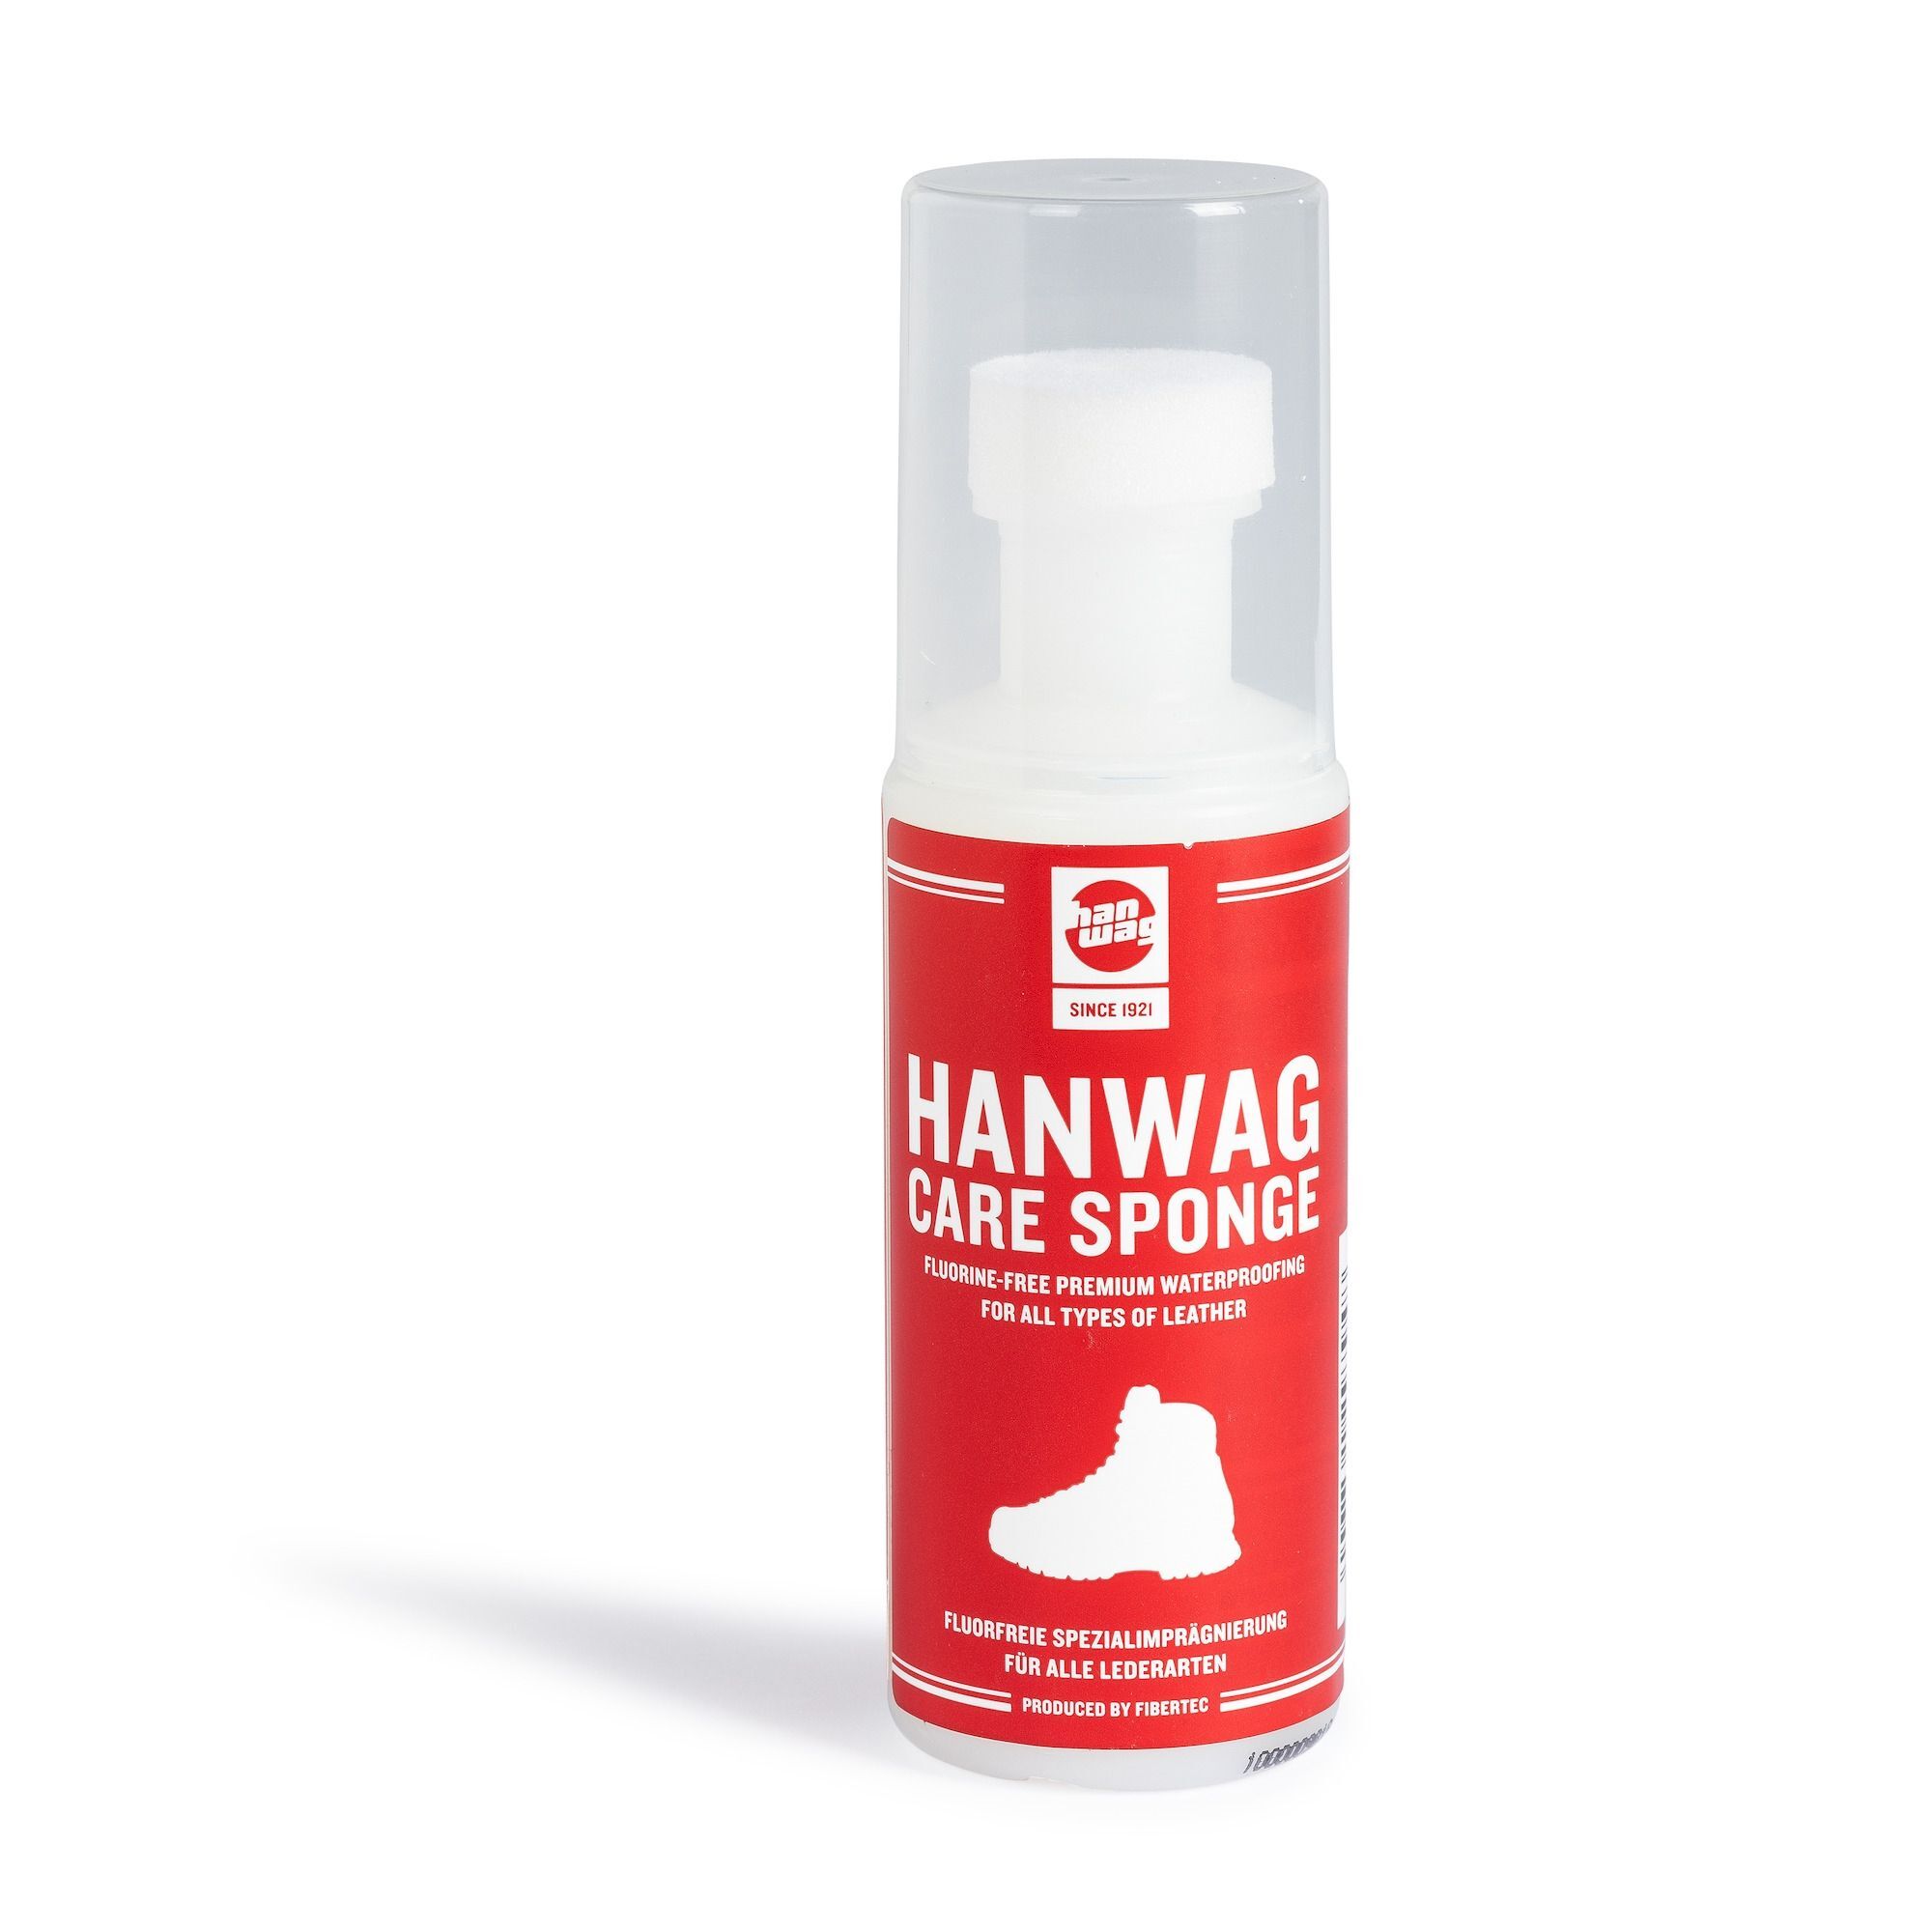 Hanwag Care Sponge - Cuidado del calzado | Hardloop